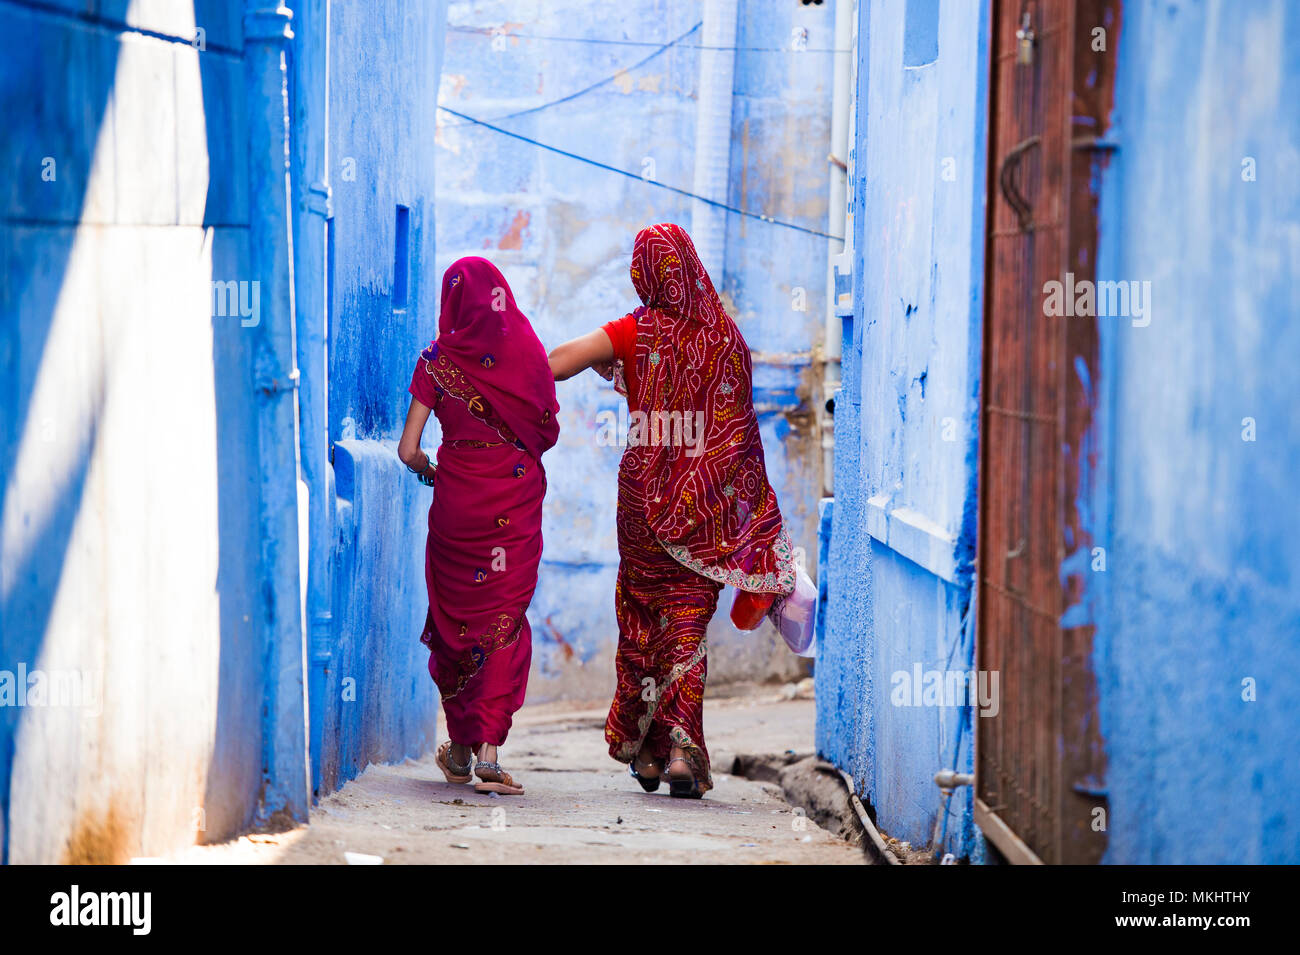 Zwei Frauen in der traditionellen indischen Sari gekleidet sind ein Spaziergang durch die engen Gassen von die blaue Stadt Jodhpur, Rajasthan, Indien. Stockfoto